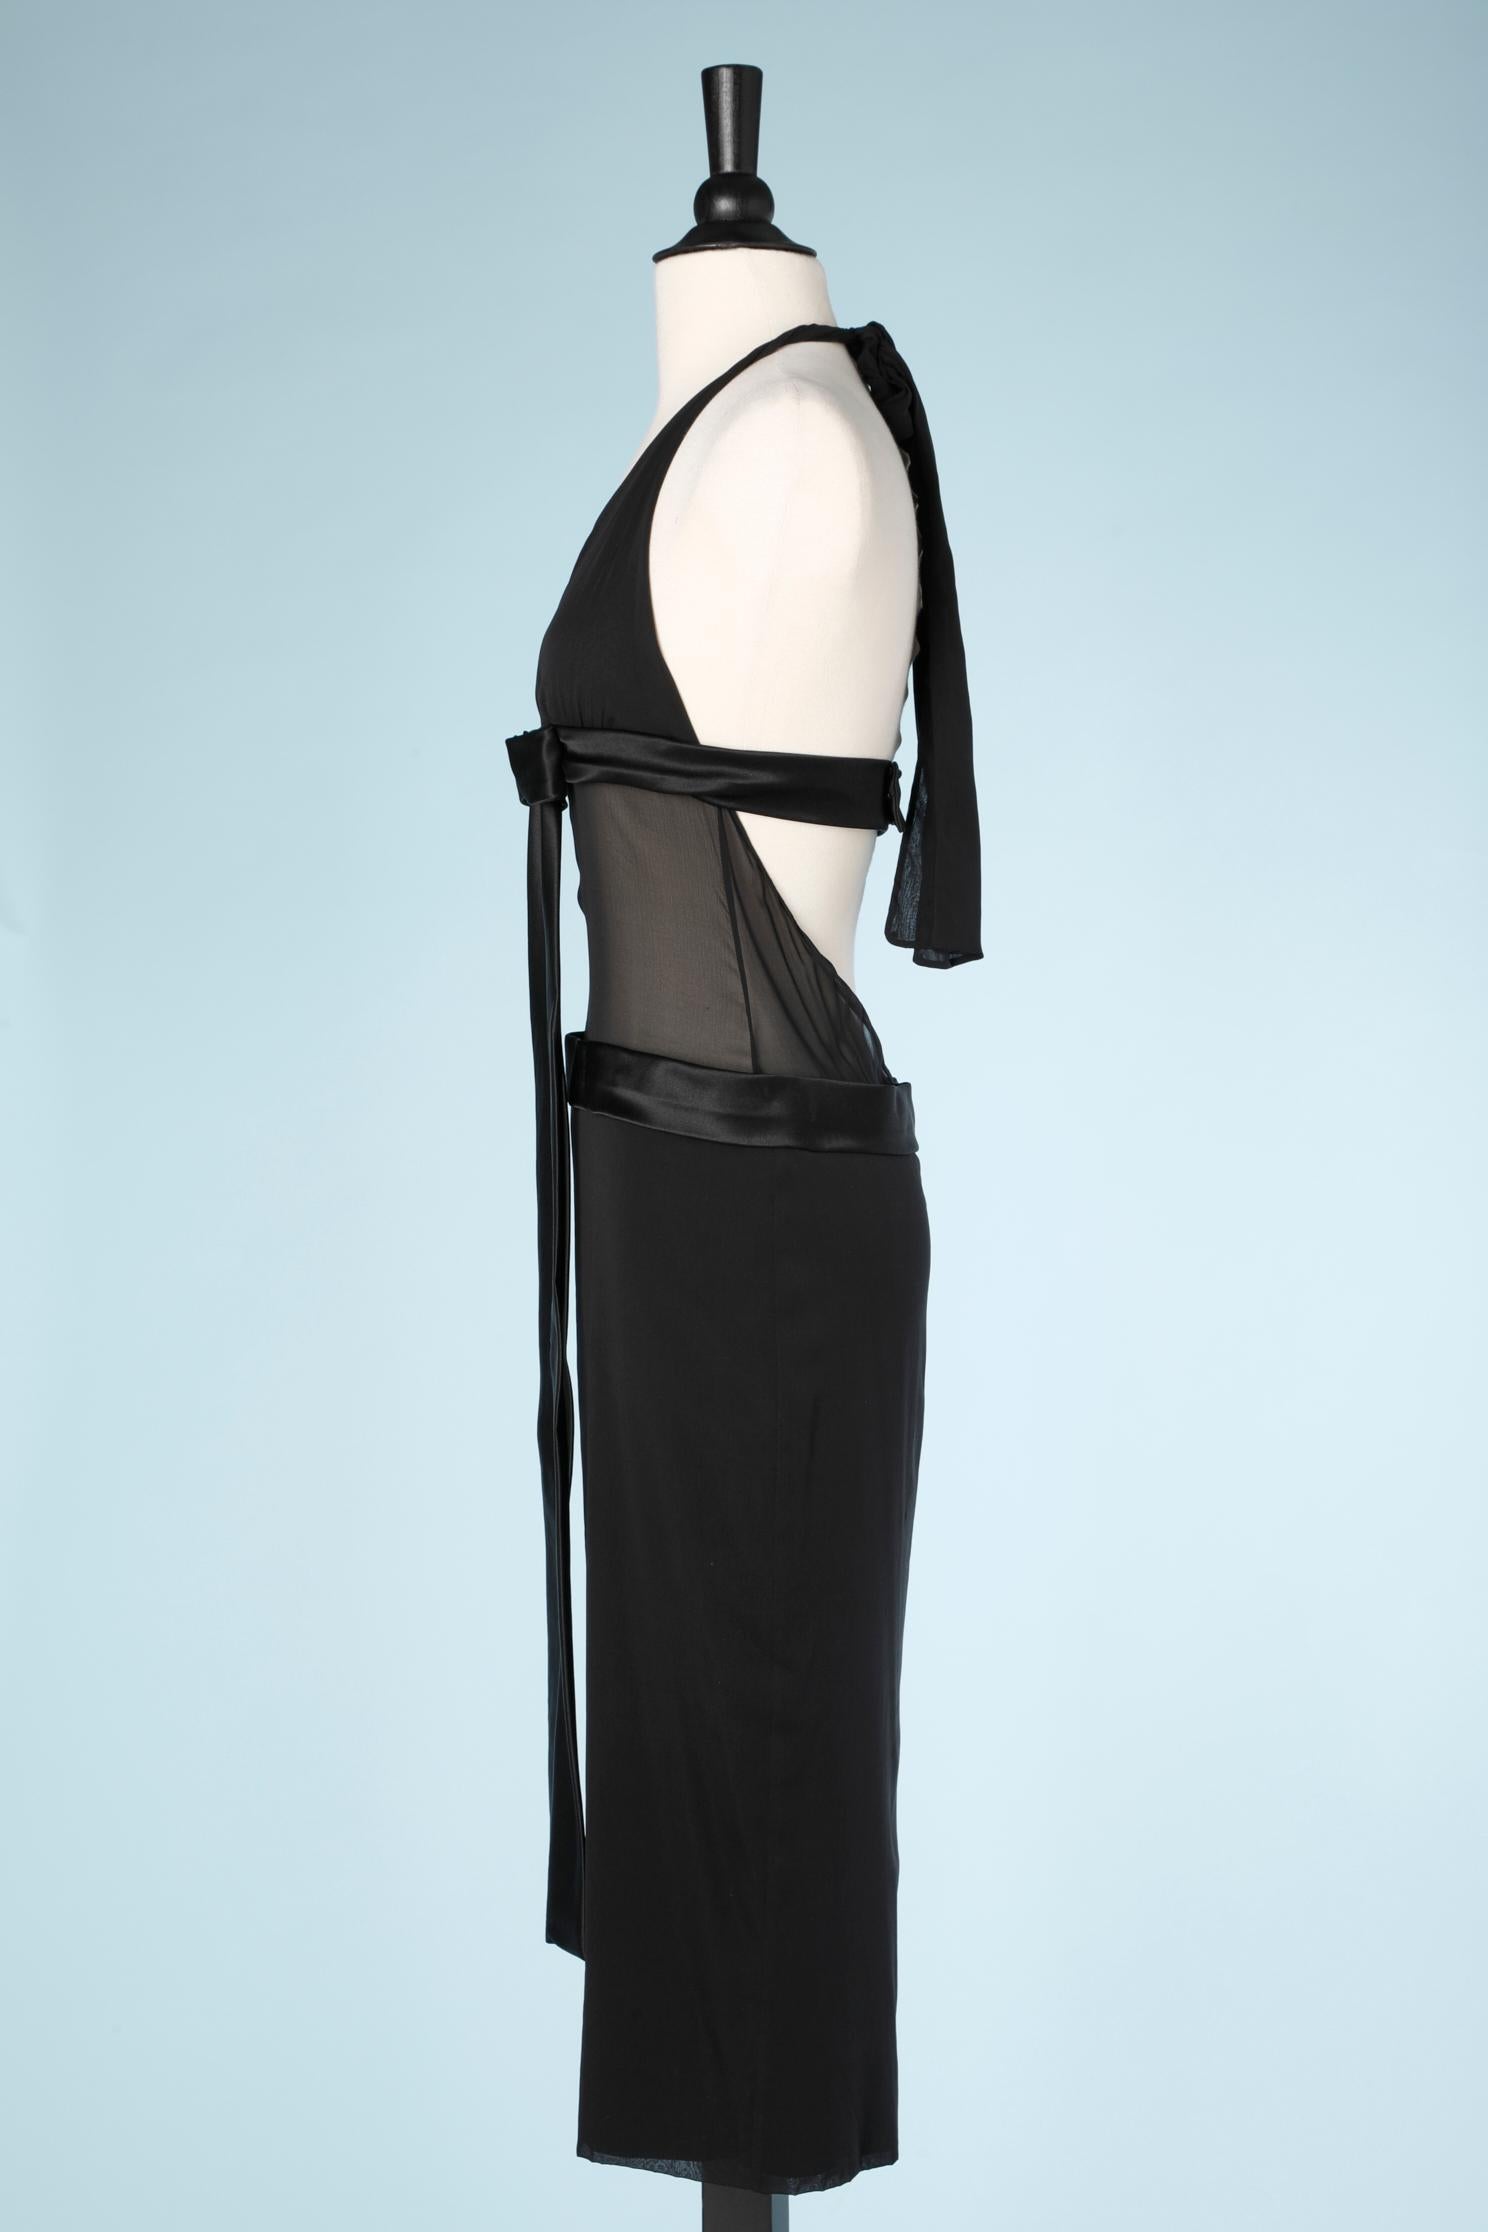 Black evening dress in chiffon, silk and satin Dolce & Gabbana 1